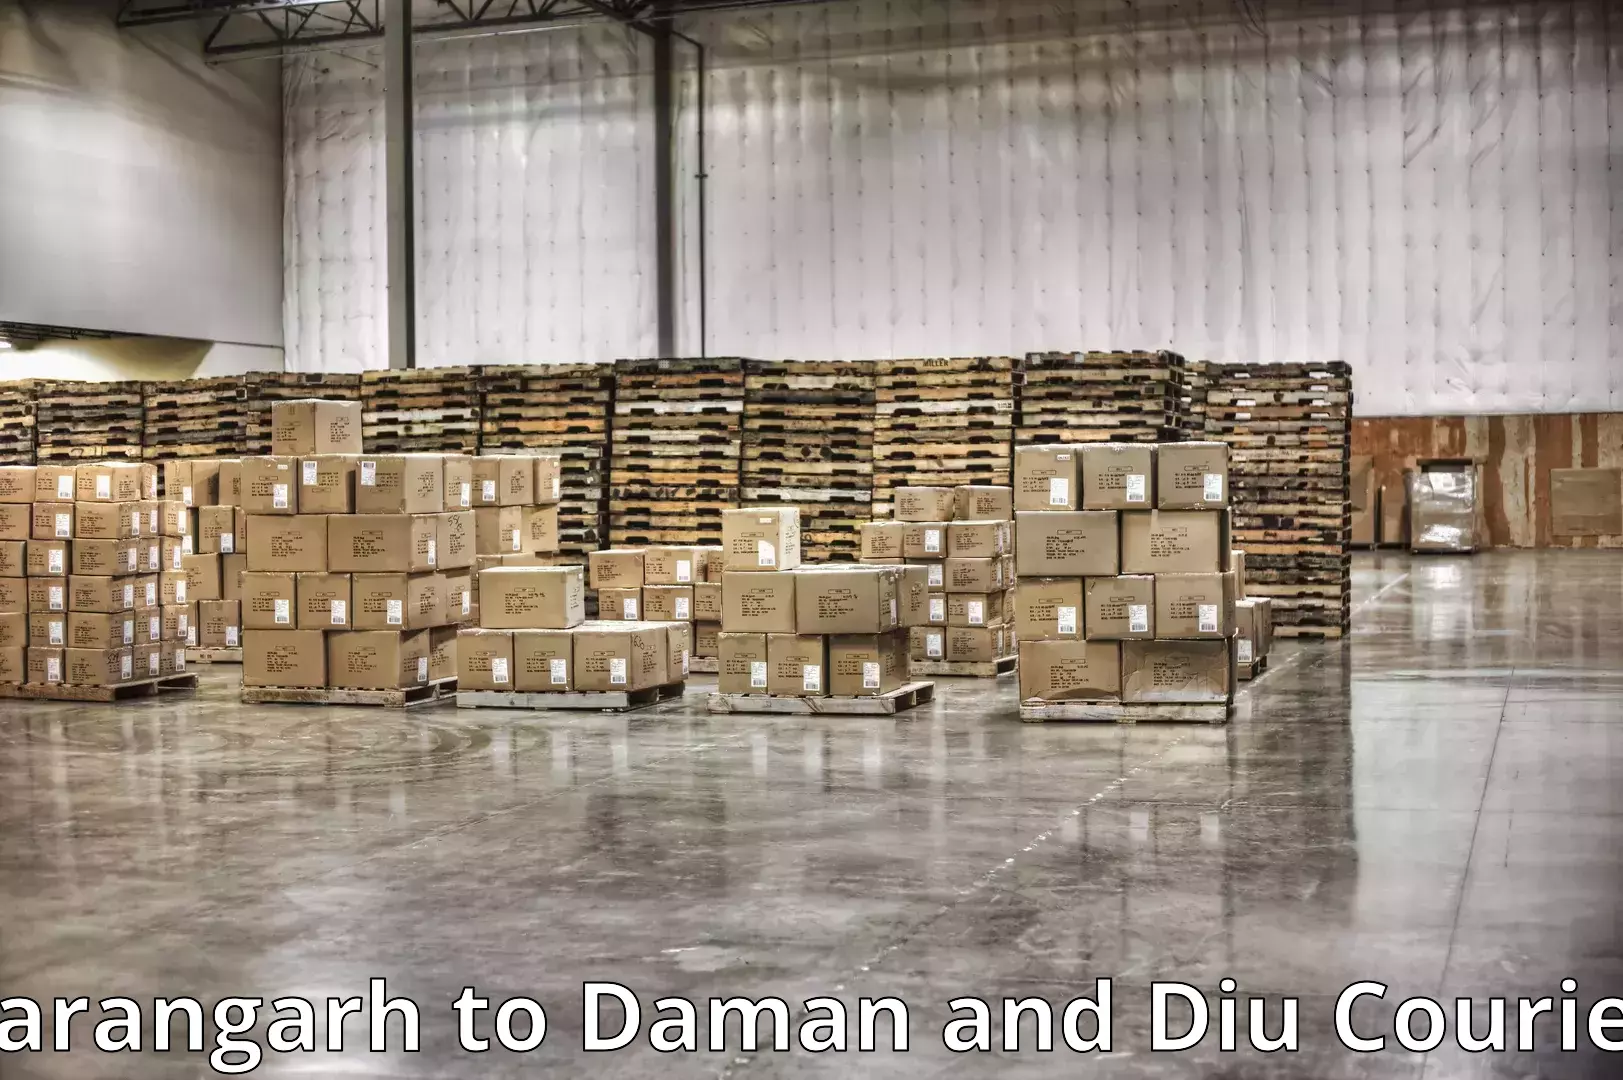 Professional movers Sarangarh to Daman and Diu